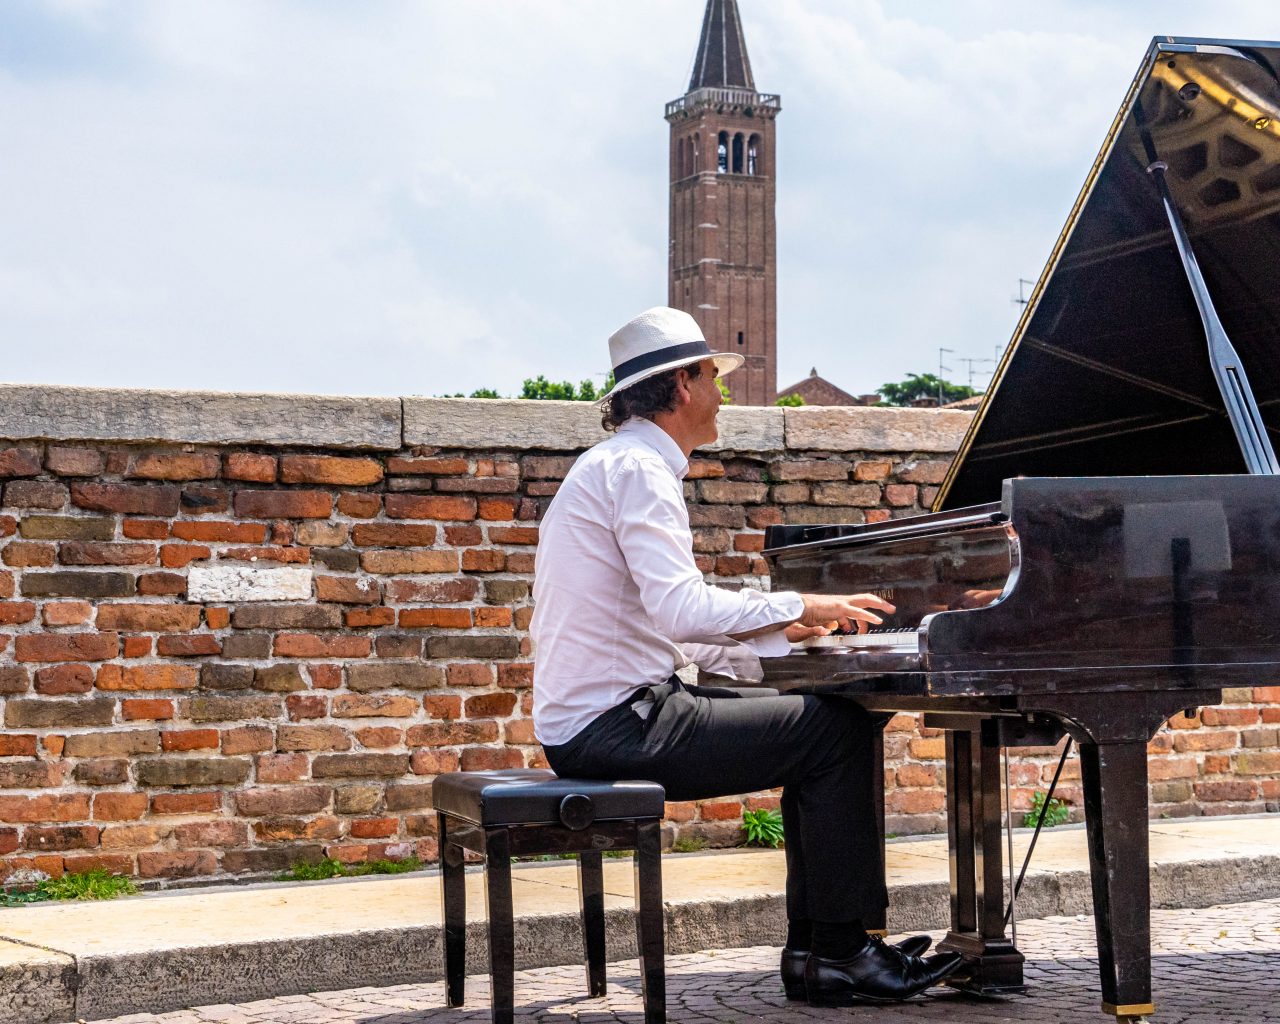 Pianospeler-op-brug-in-Verona